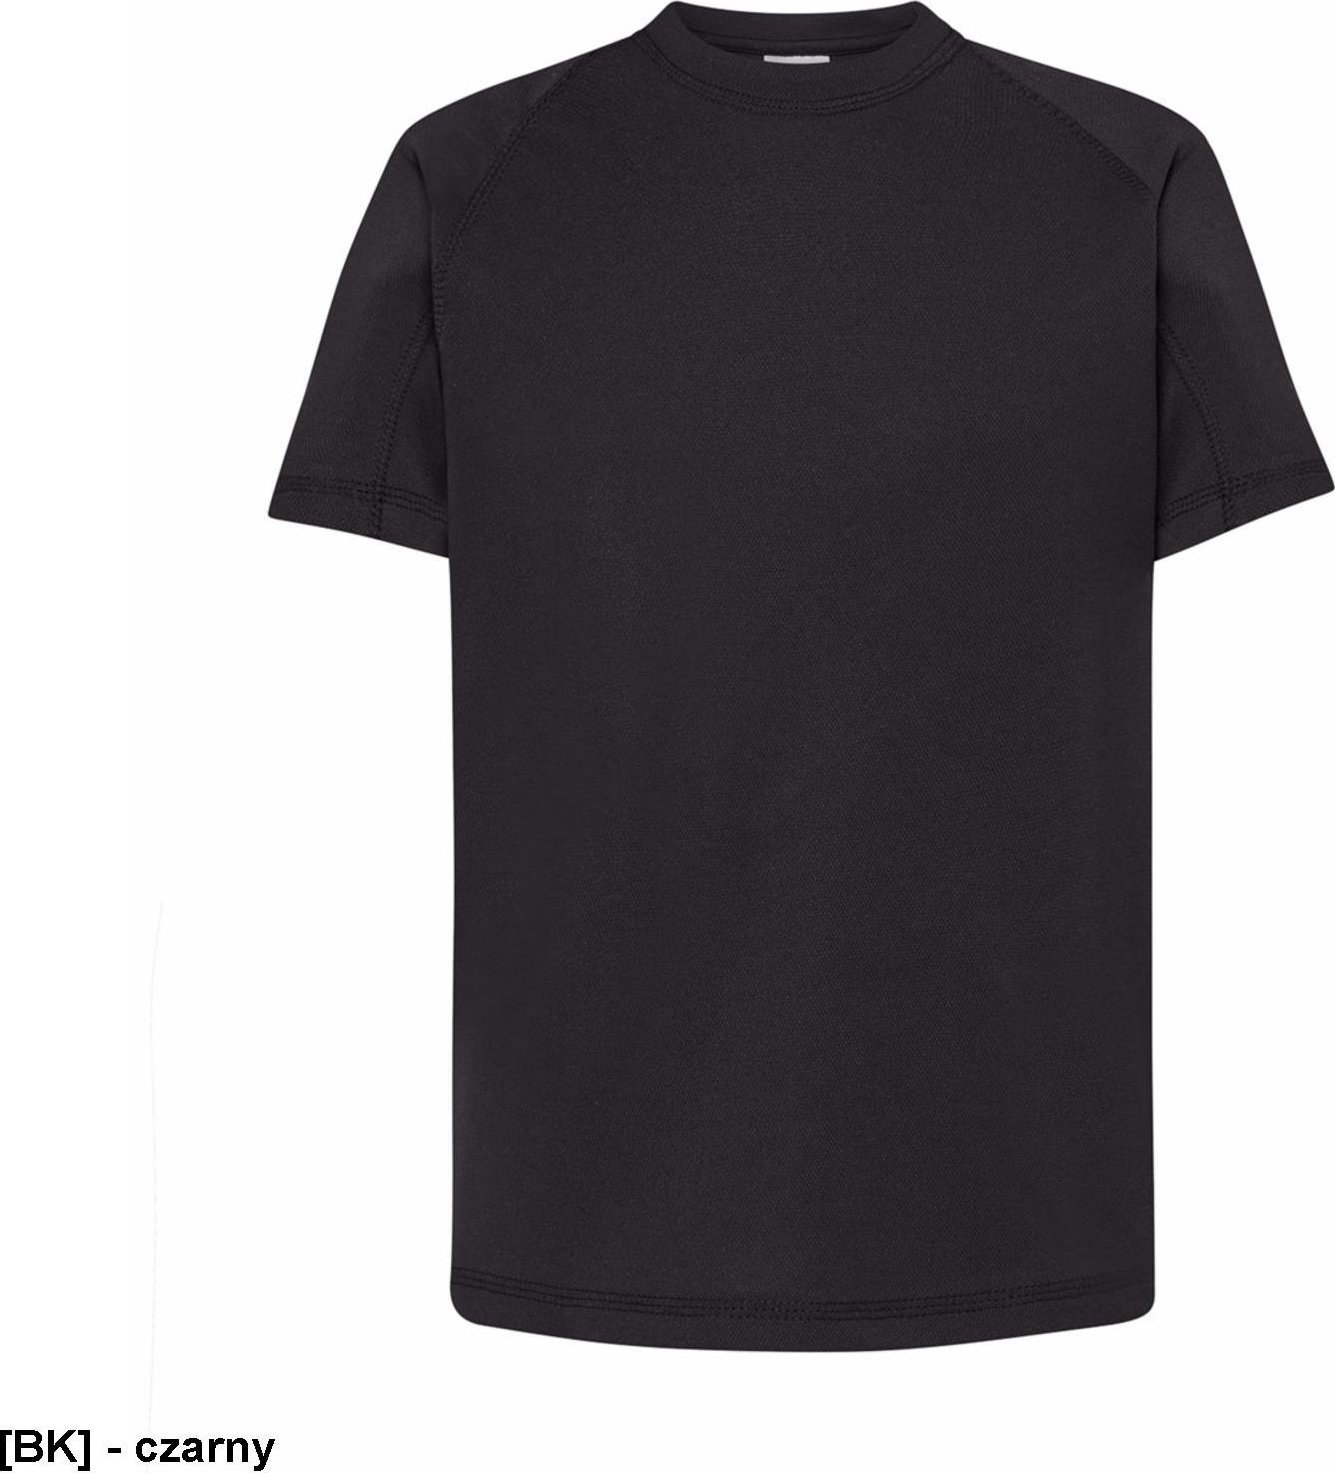 JHK TSRKSPOR SPORT KID - T-shirt dziecięcy z krótkim rękawem - czarny - wzrost 110-152cm. 3-4